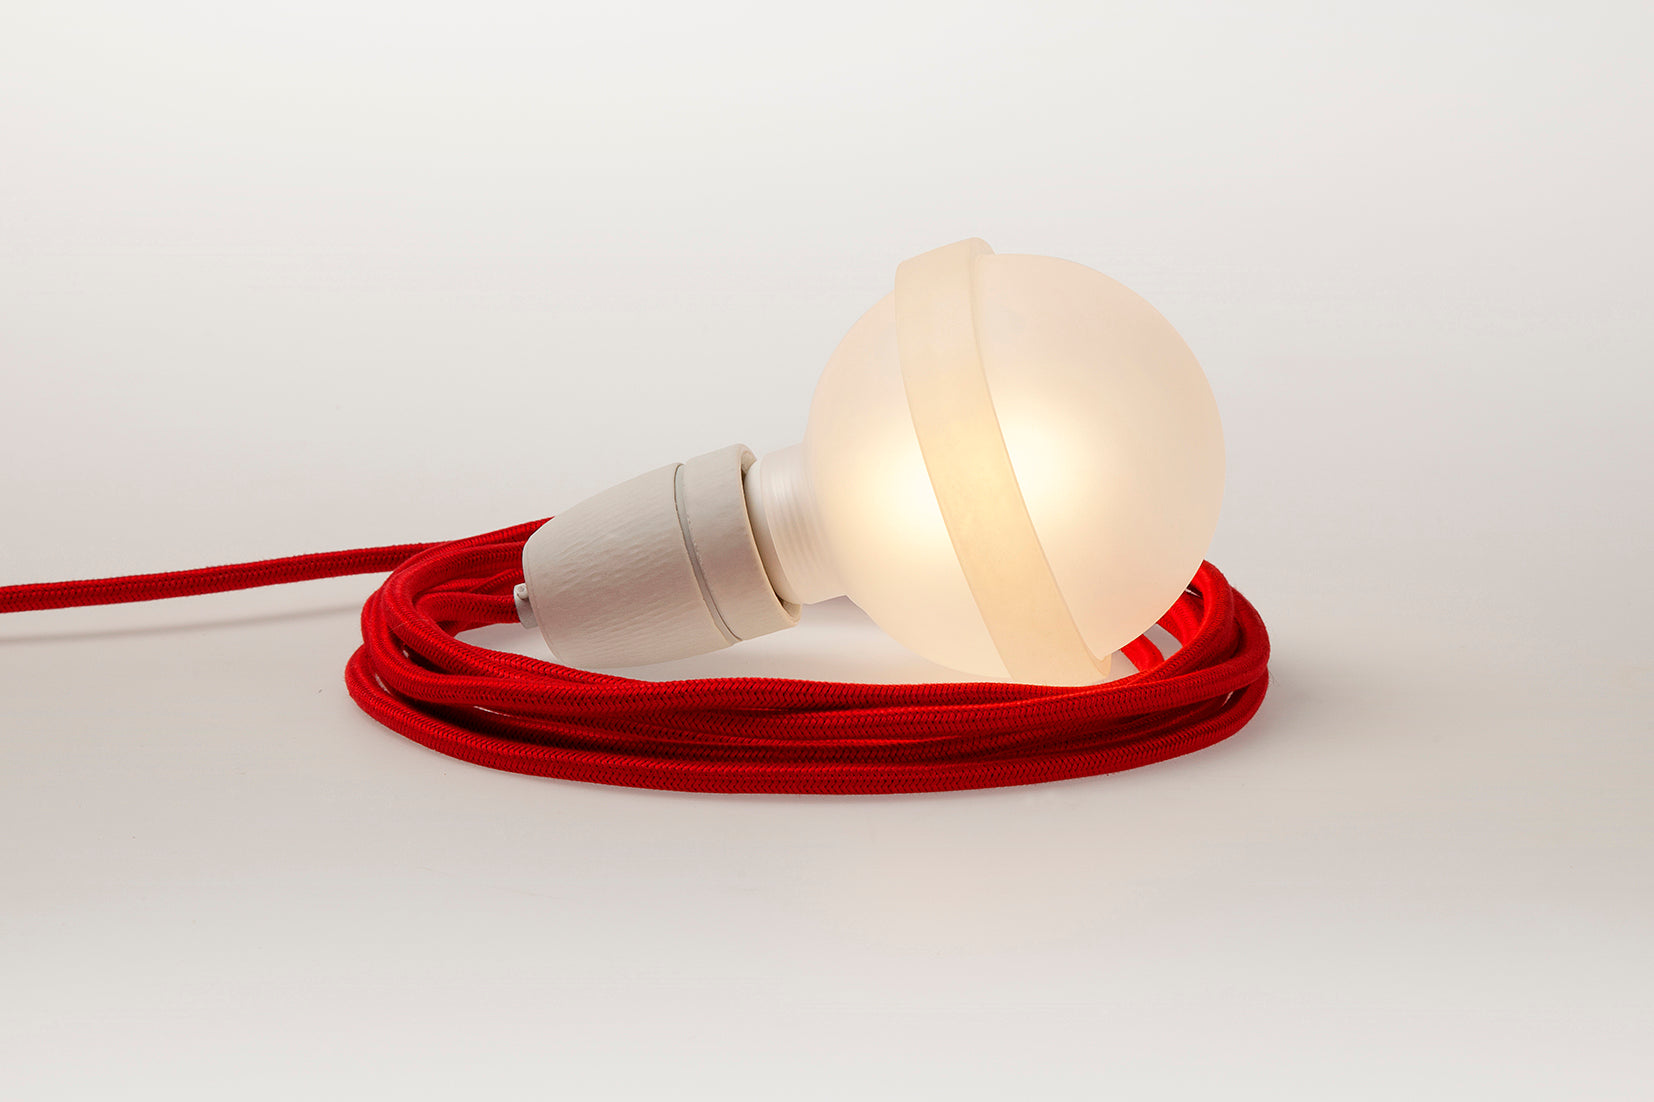 Rote Lampe von Raumgestalt mit rotem Textilkabel